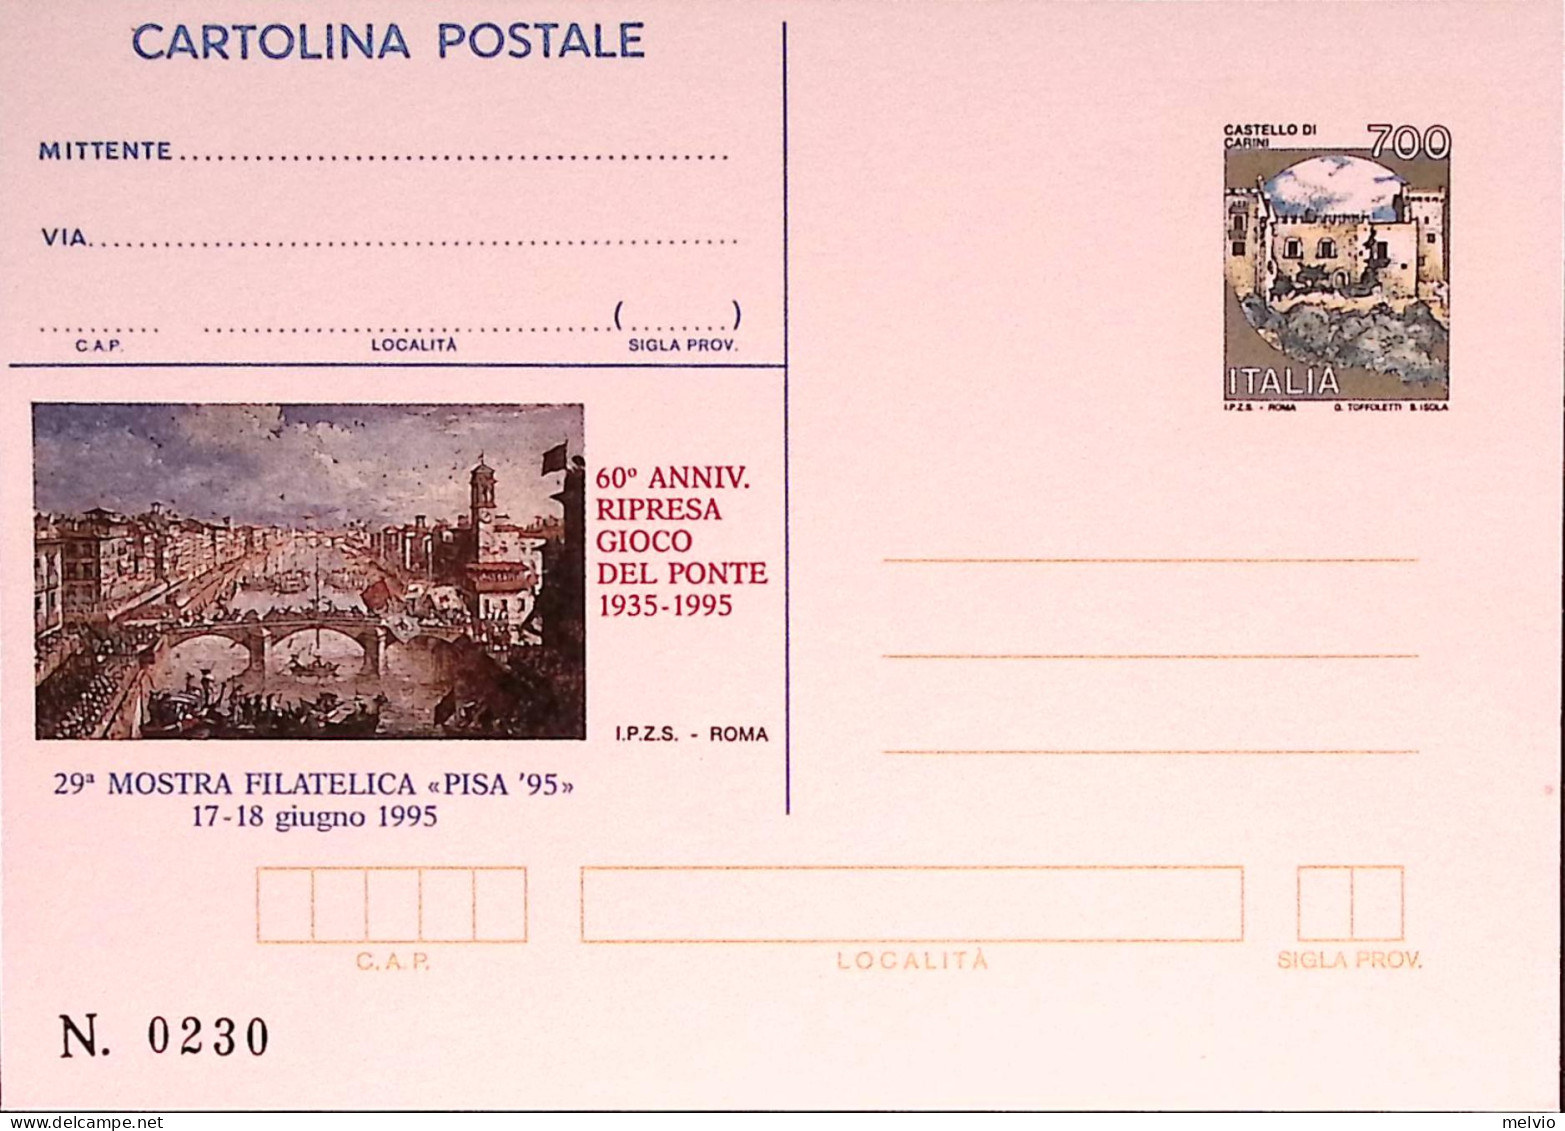 1995-PISA-GIOCO PONTE Cartolina Postale IPZS Lire 700 Nuova - Interi Postali